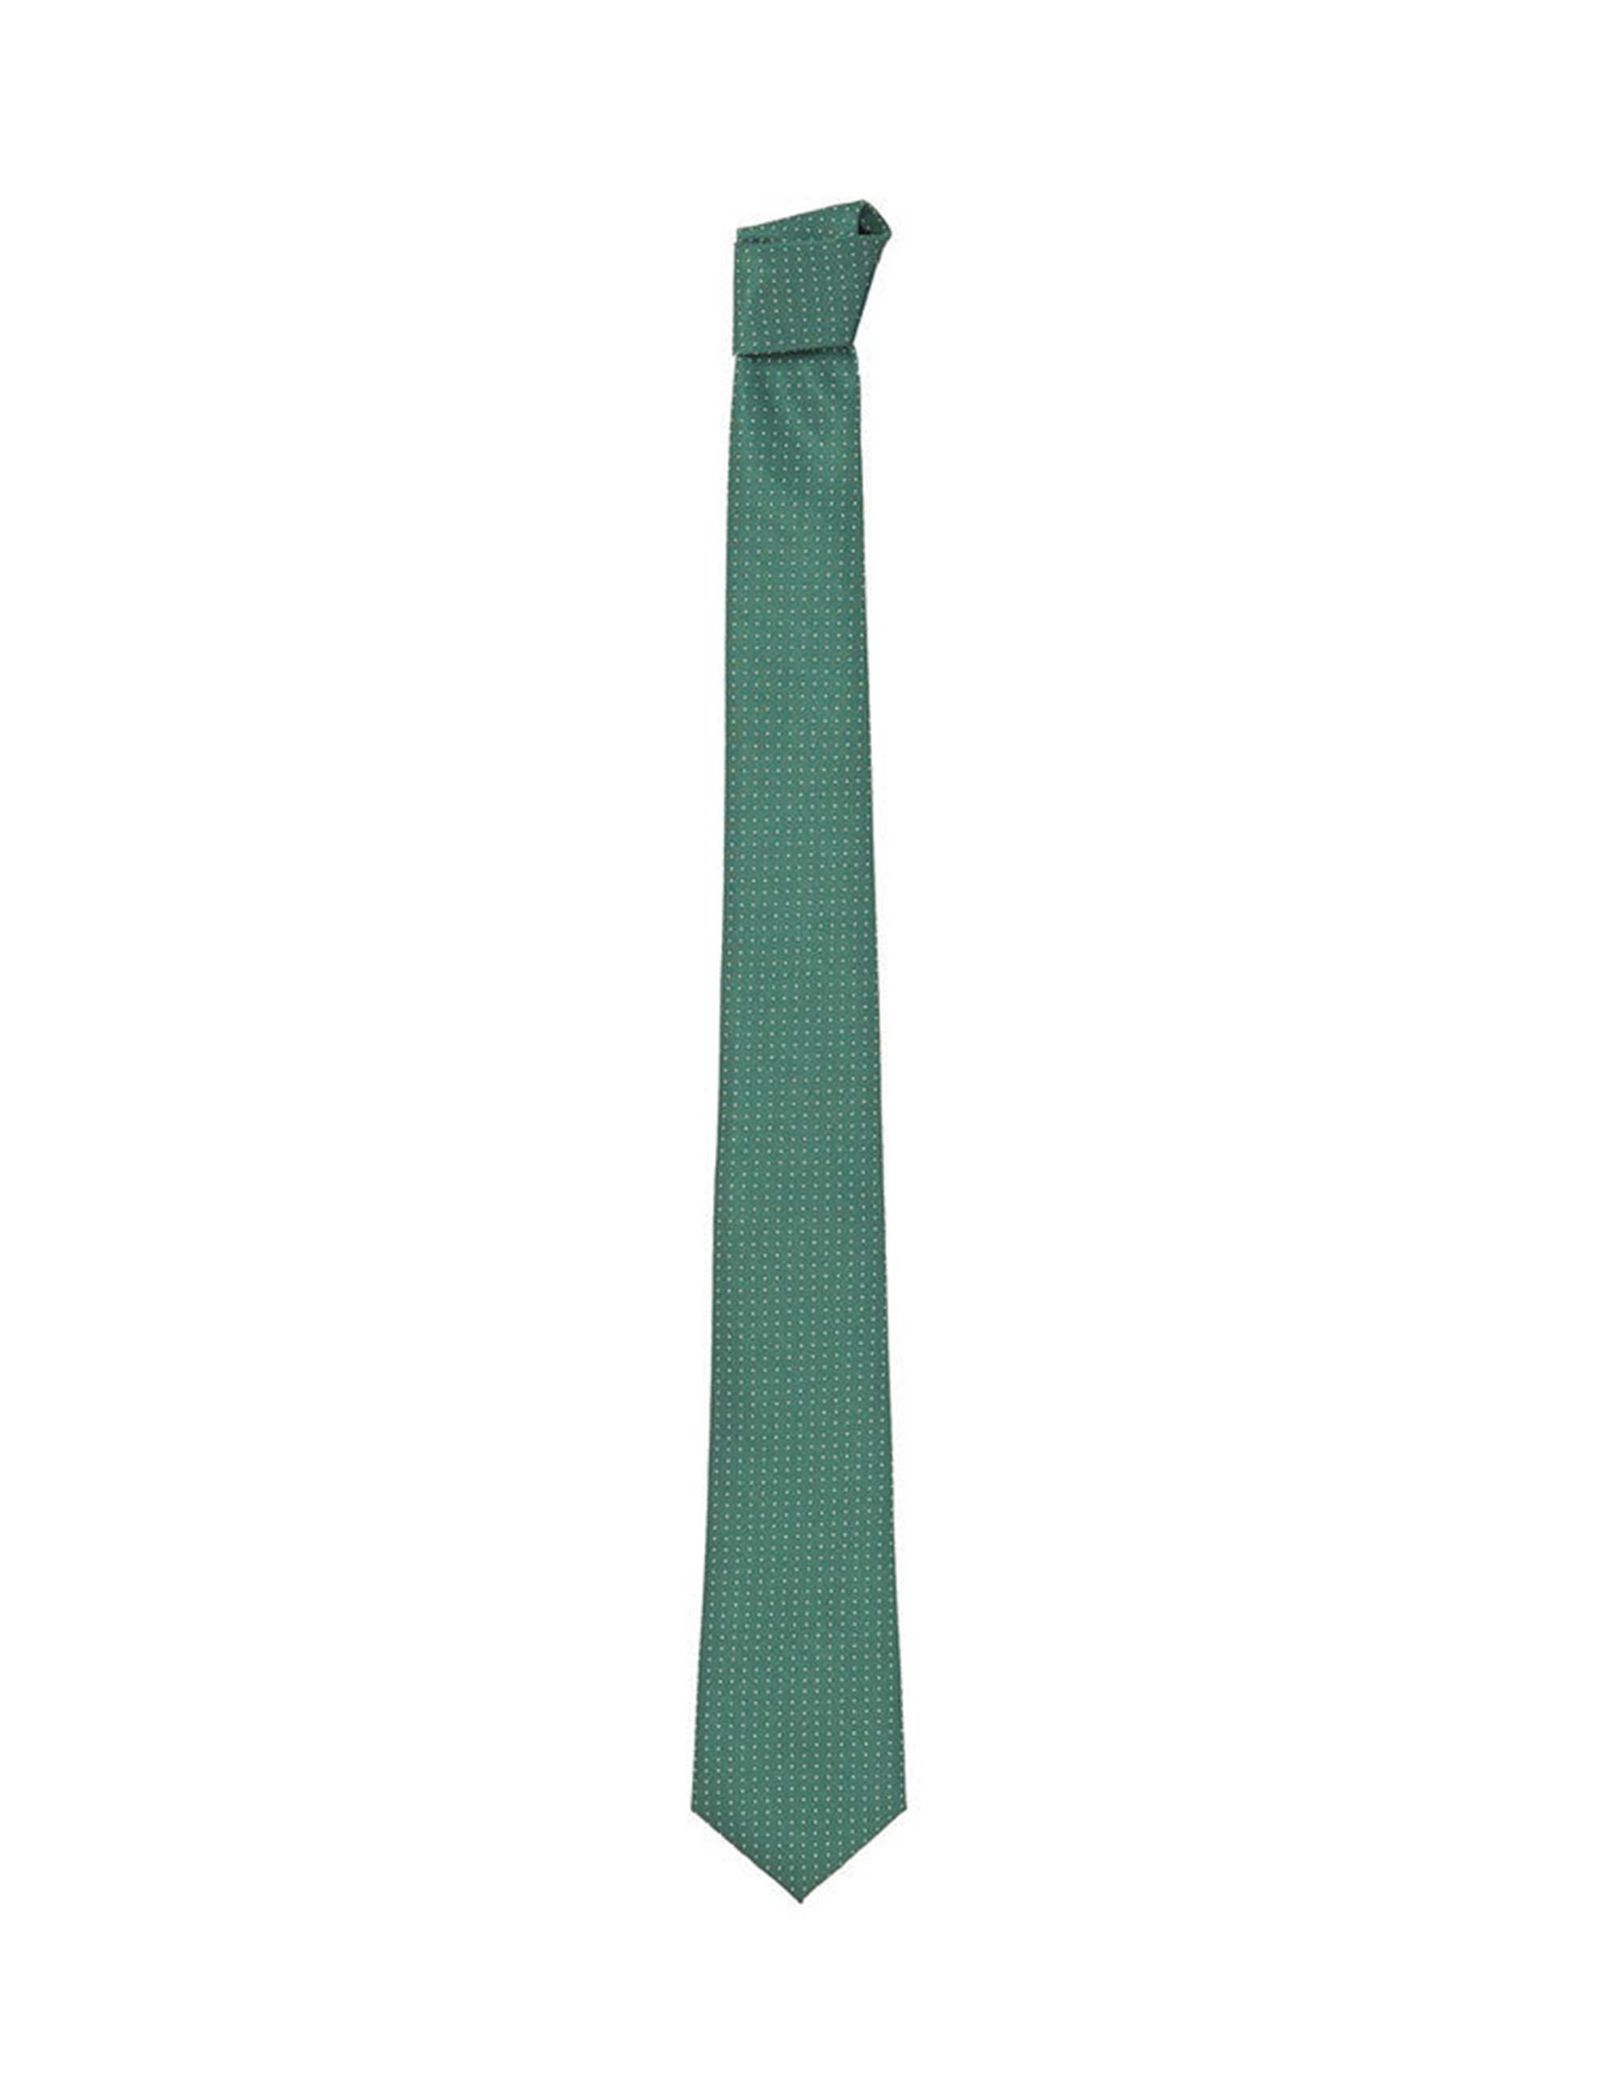 کراوات طرح دار مردانه - مانگو - سبز - 1